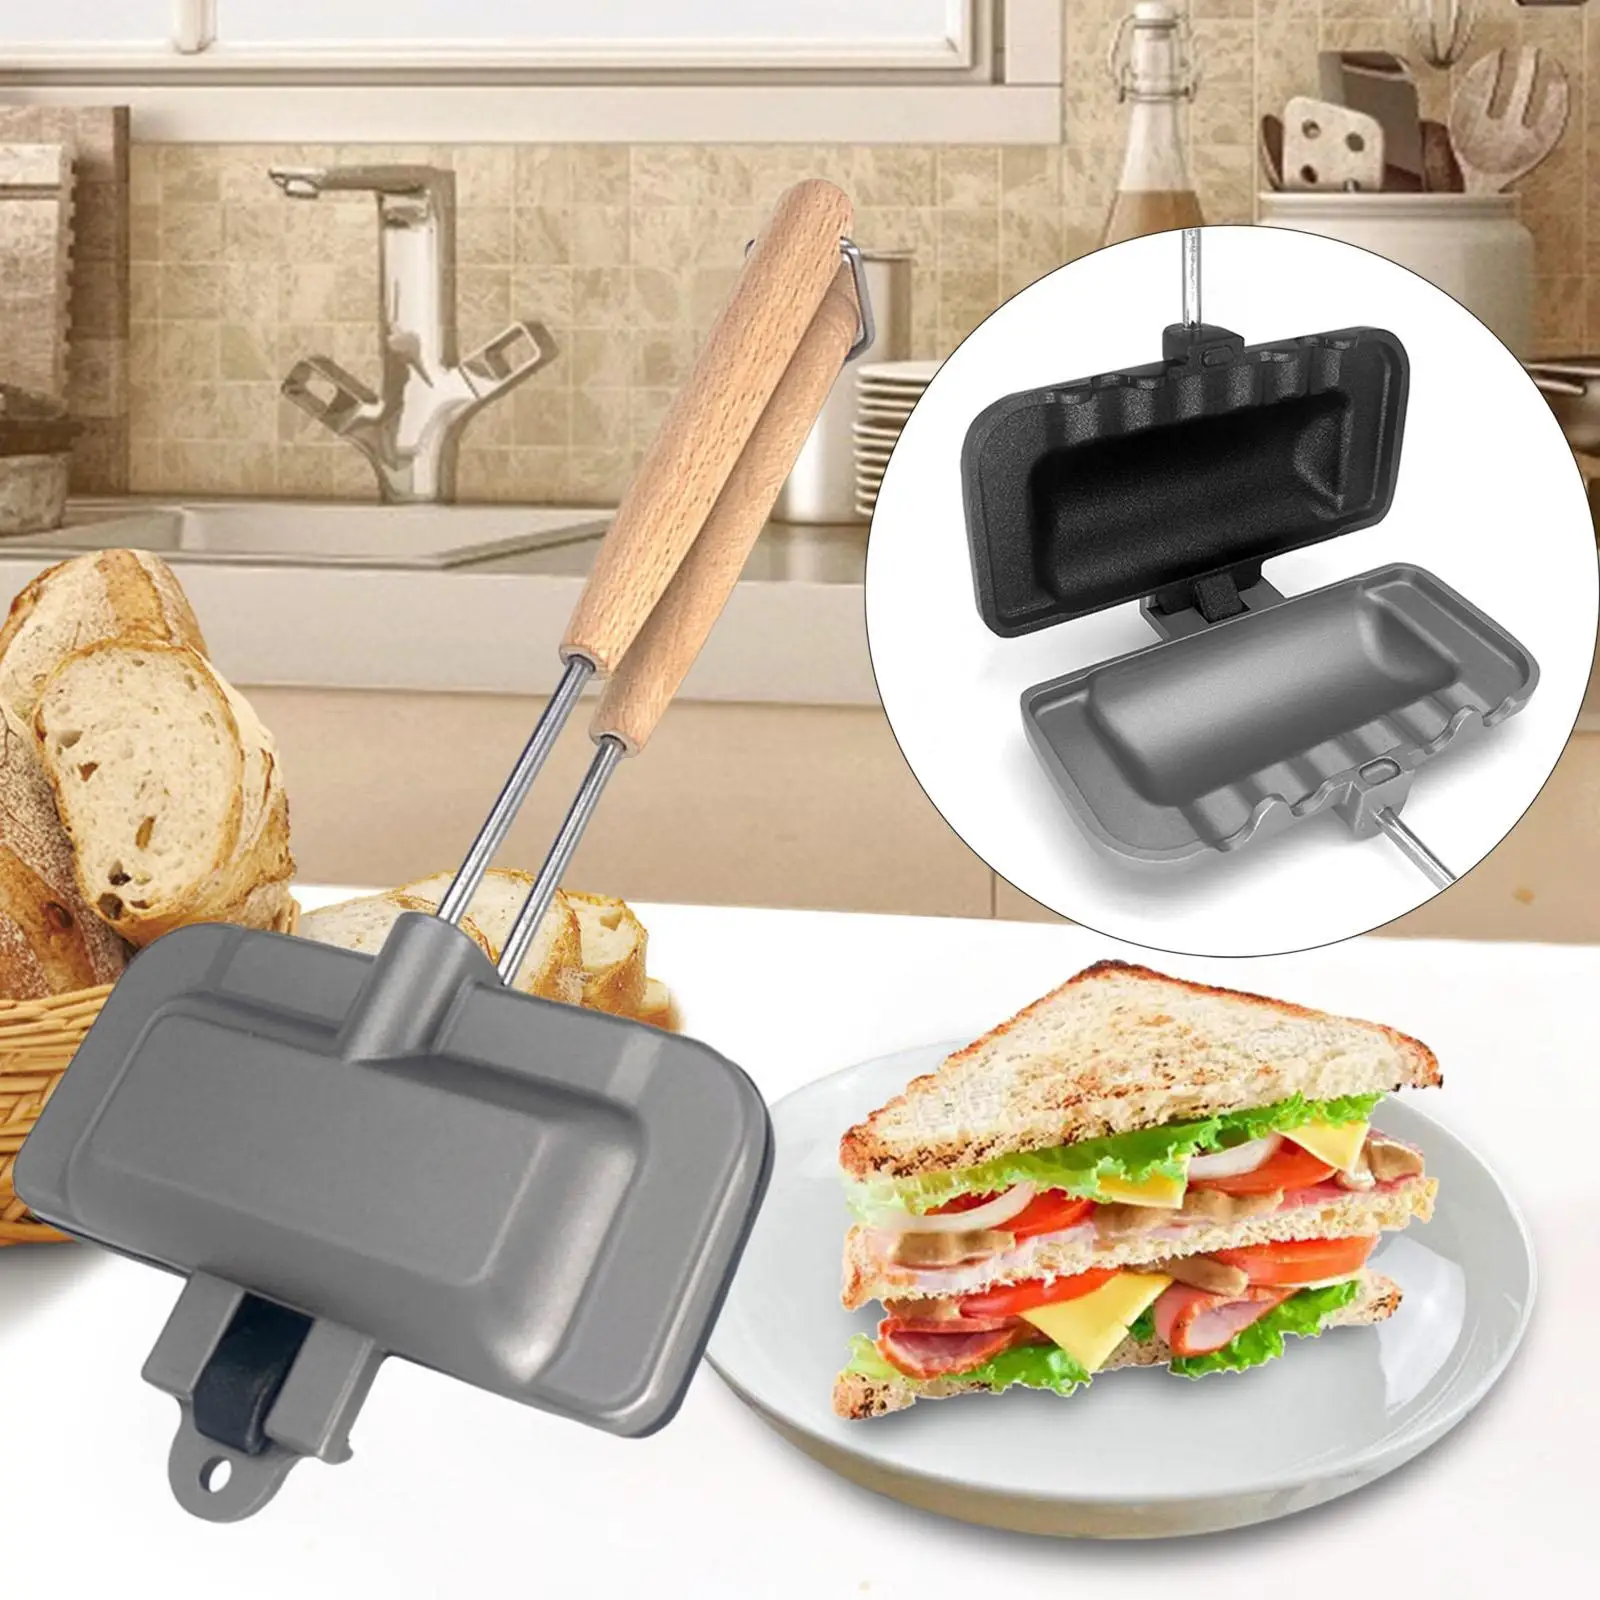 Nonstick Sandwich Maker, Baking Pan for Home Restaurant Dining Room